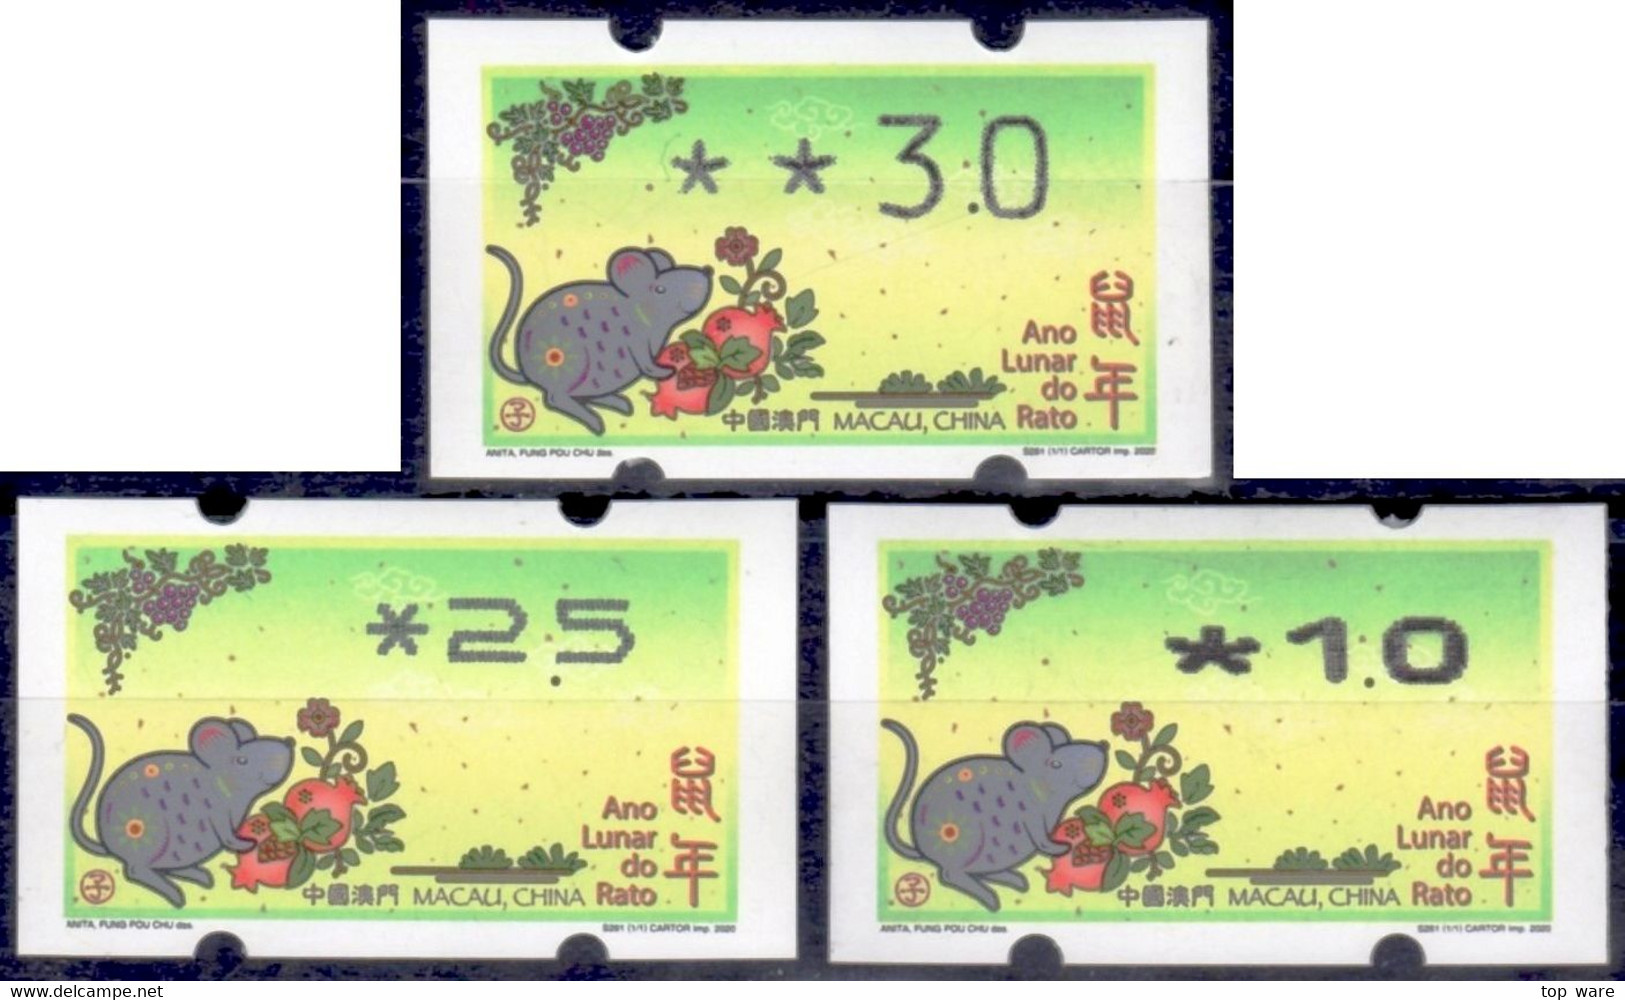 2020 Chine Macao Macau ATM Stamps Année Du Souris / Tous Types D'imprimantes Klussendorf Nagler Automatenmarken - Automatenmarken